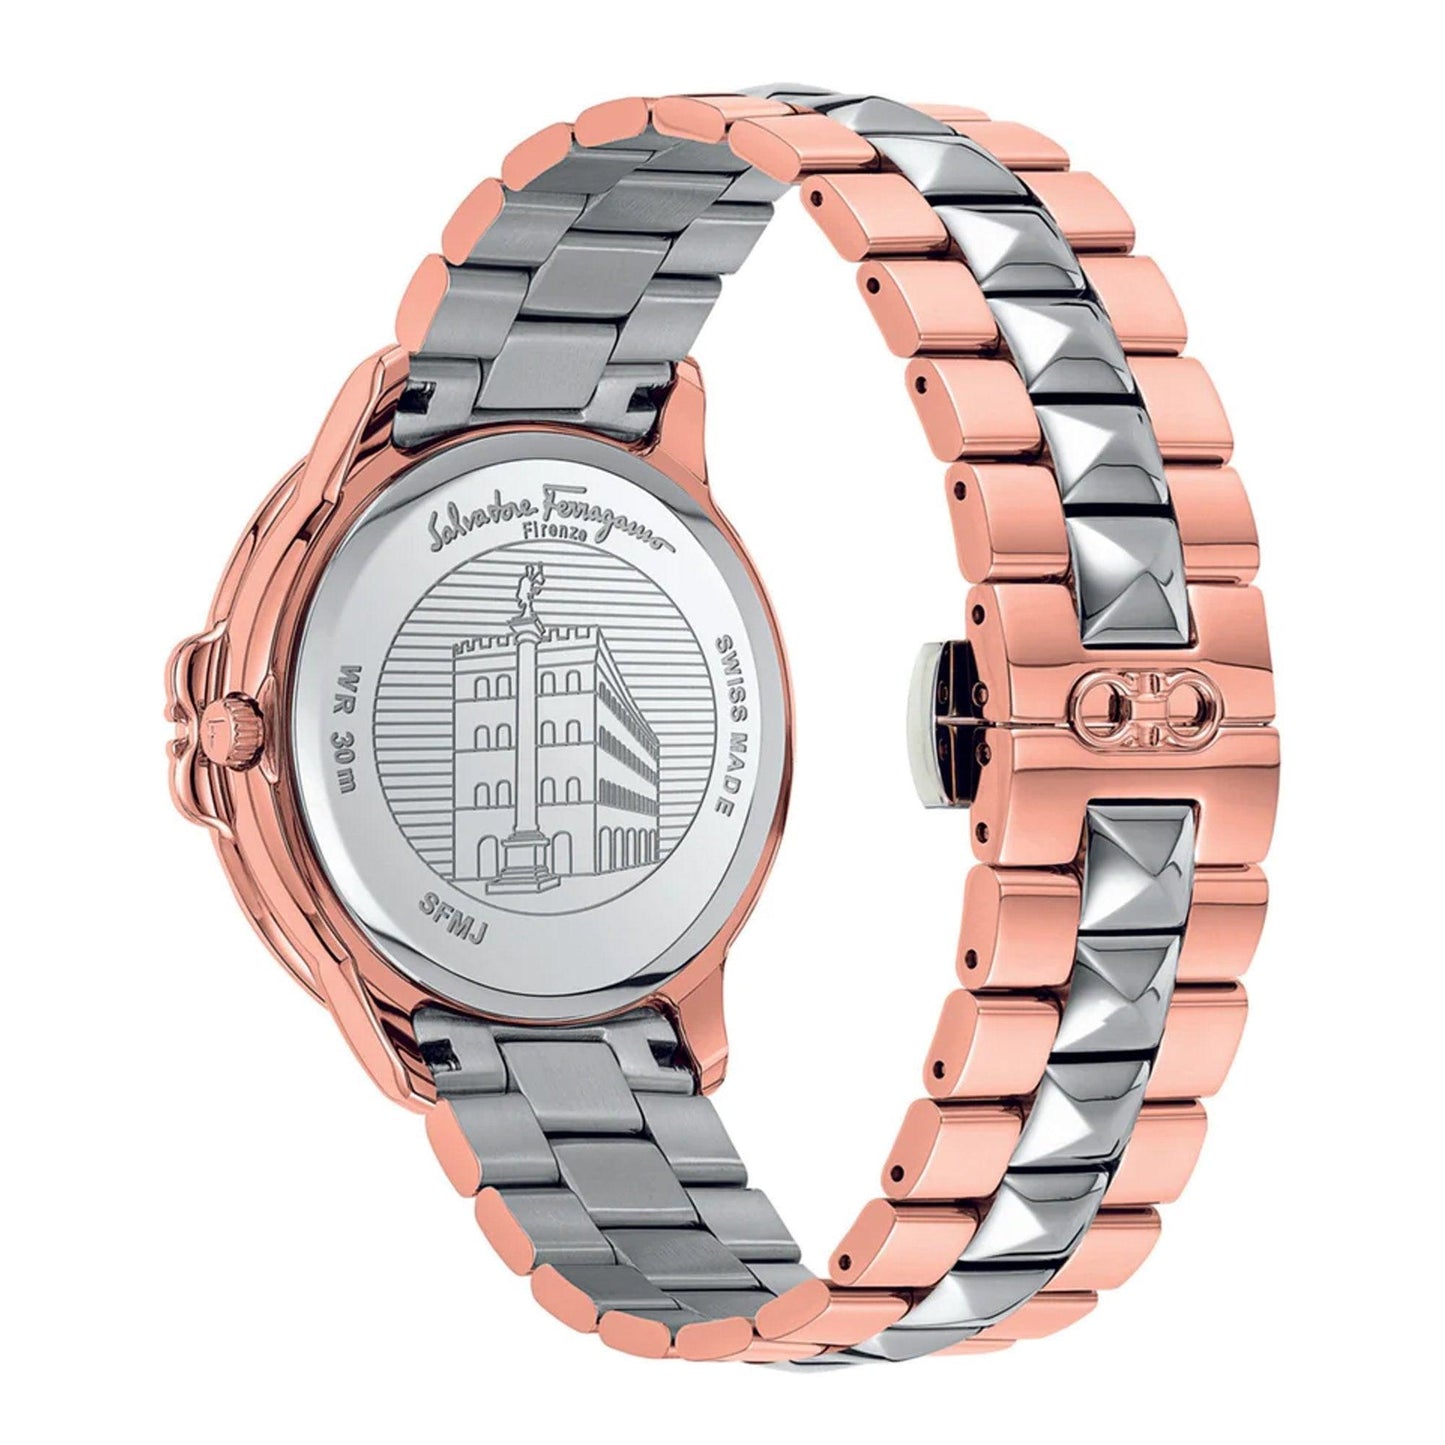 Salvatore Ferragamo Studmania SFMJ00622 orologio donna al quarzo - Kechiq Concept Boutique